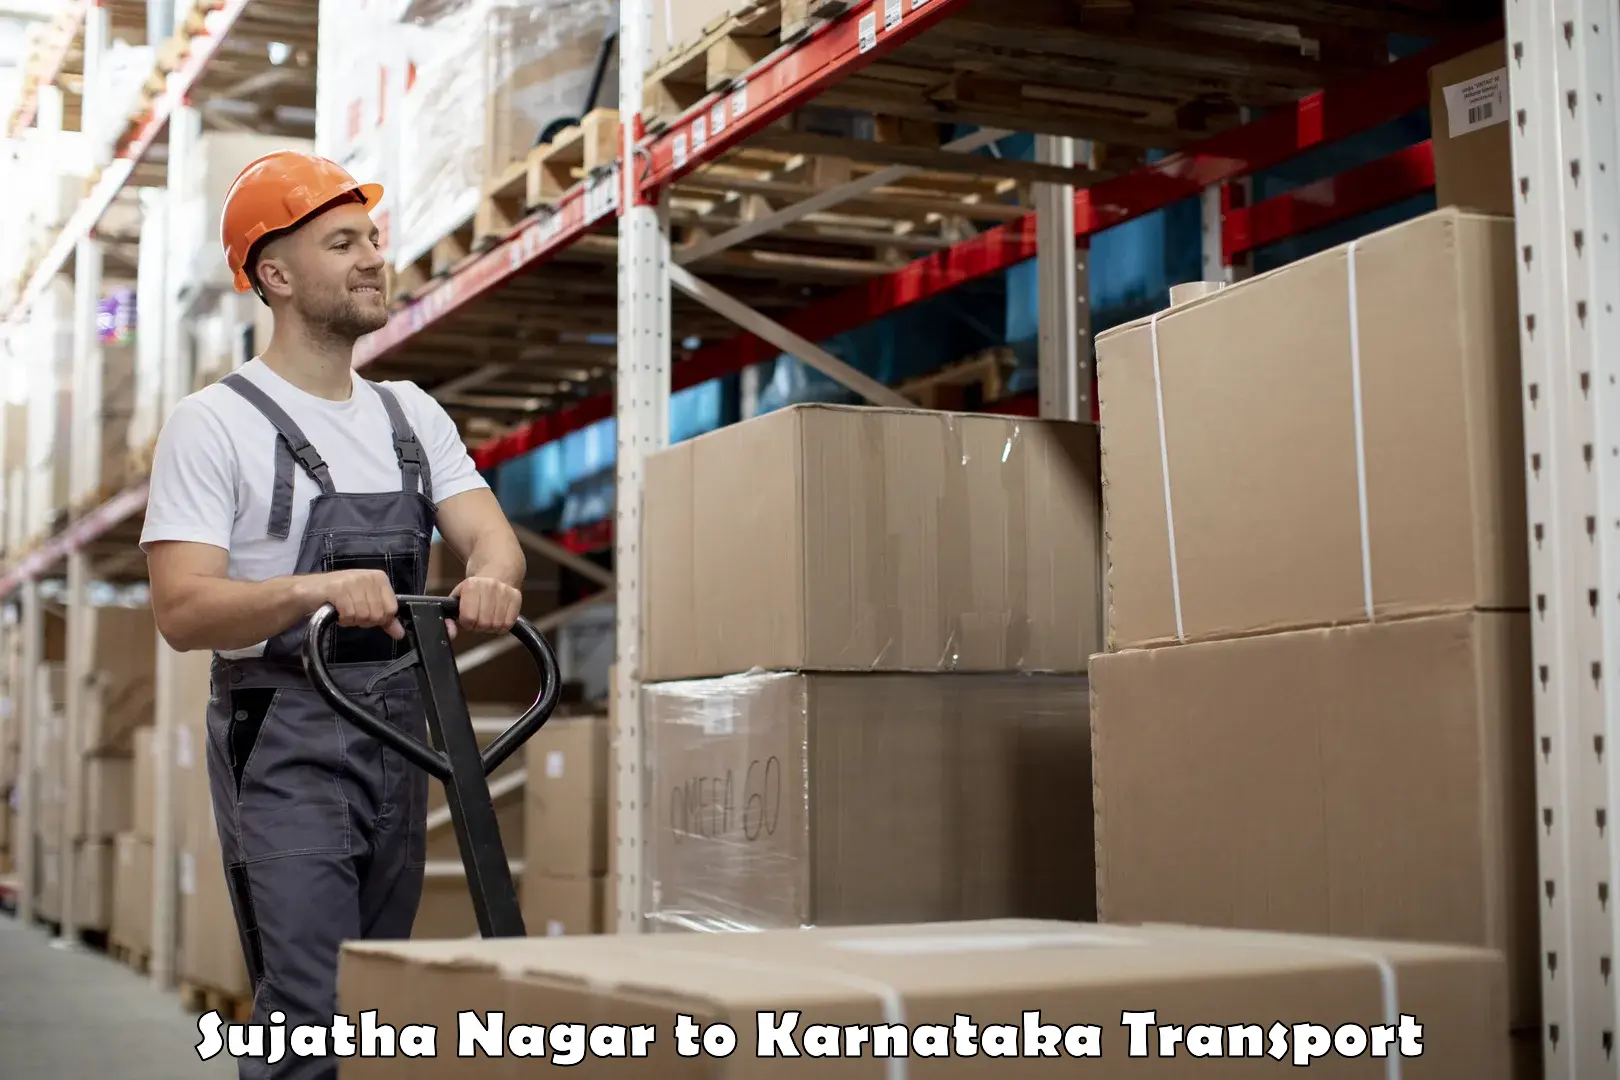 Container transportation services Sujatha Nagar to Karnataka